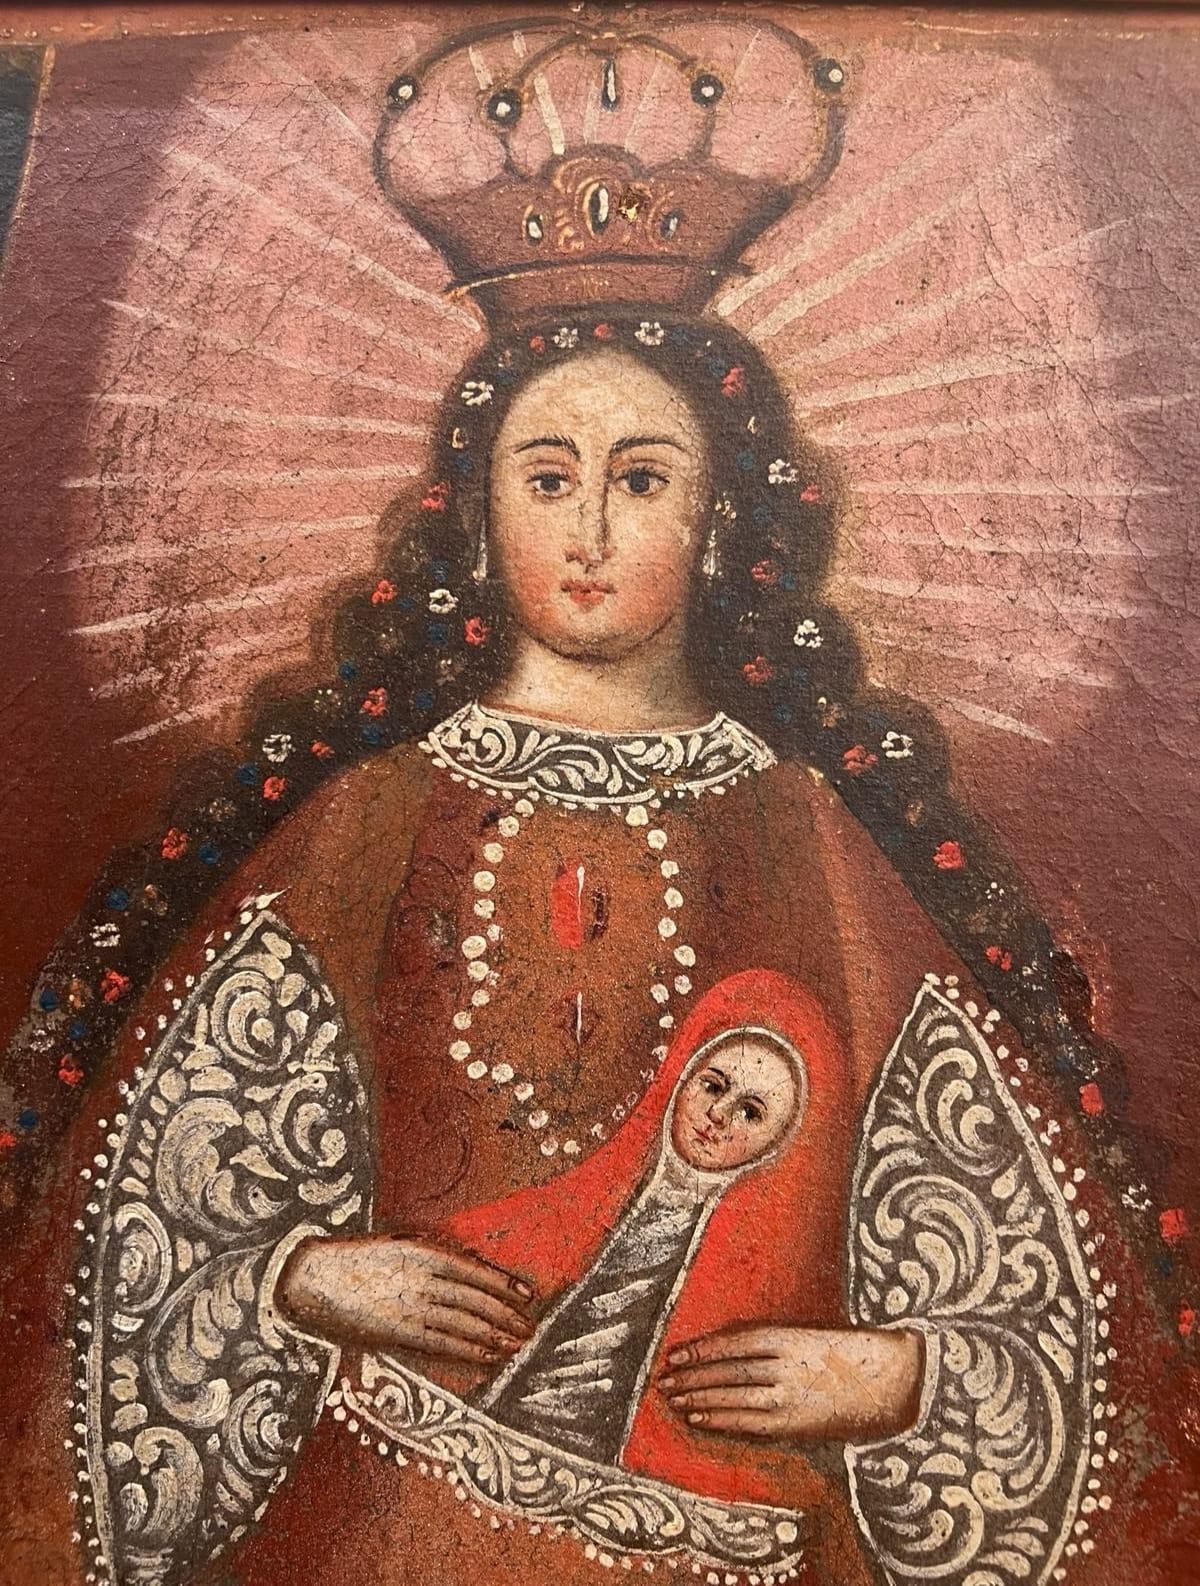 Wir präsentieren Ihnen dieses Ölgemälde auf Leinwand vom Ende des 18. Jahrhunderts, das die Jungfrau Maria darstellt, die das kleine Jesuskind in ihren Armen hält. 

Die Malerei folgt dem Stil der Cuzco-Schule (Escuela cuzqueña) - einer